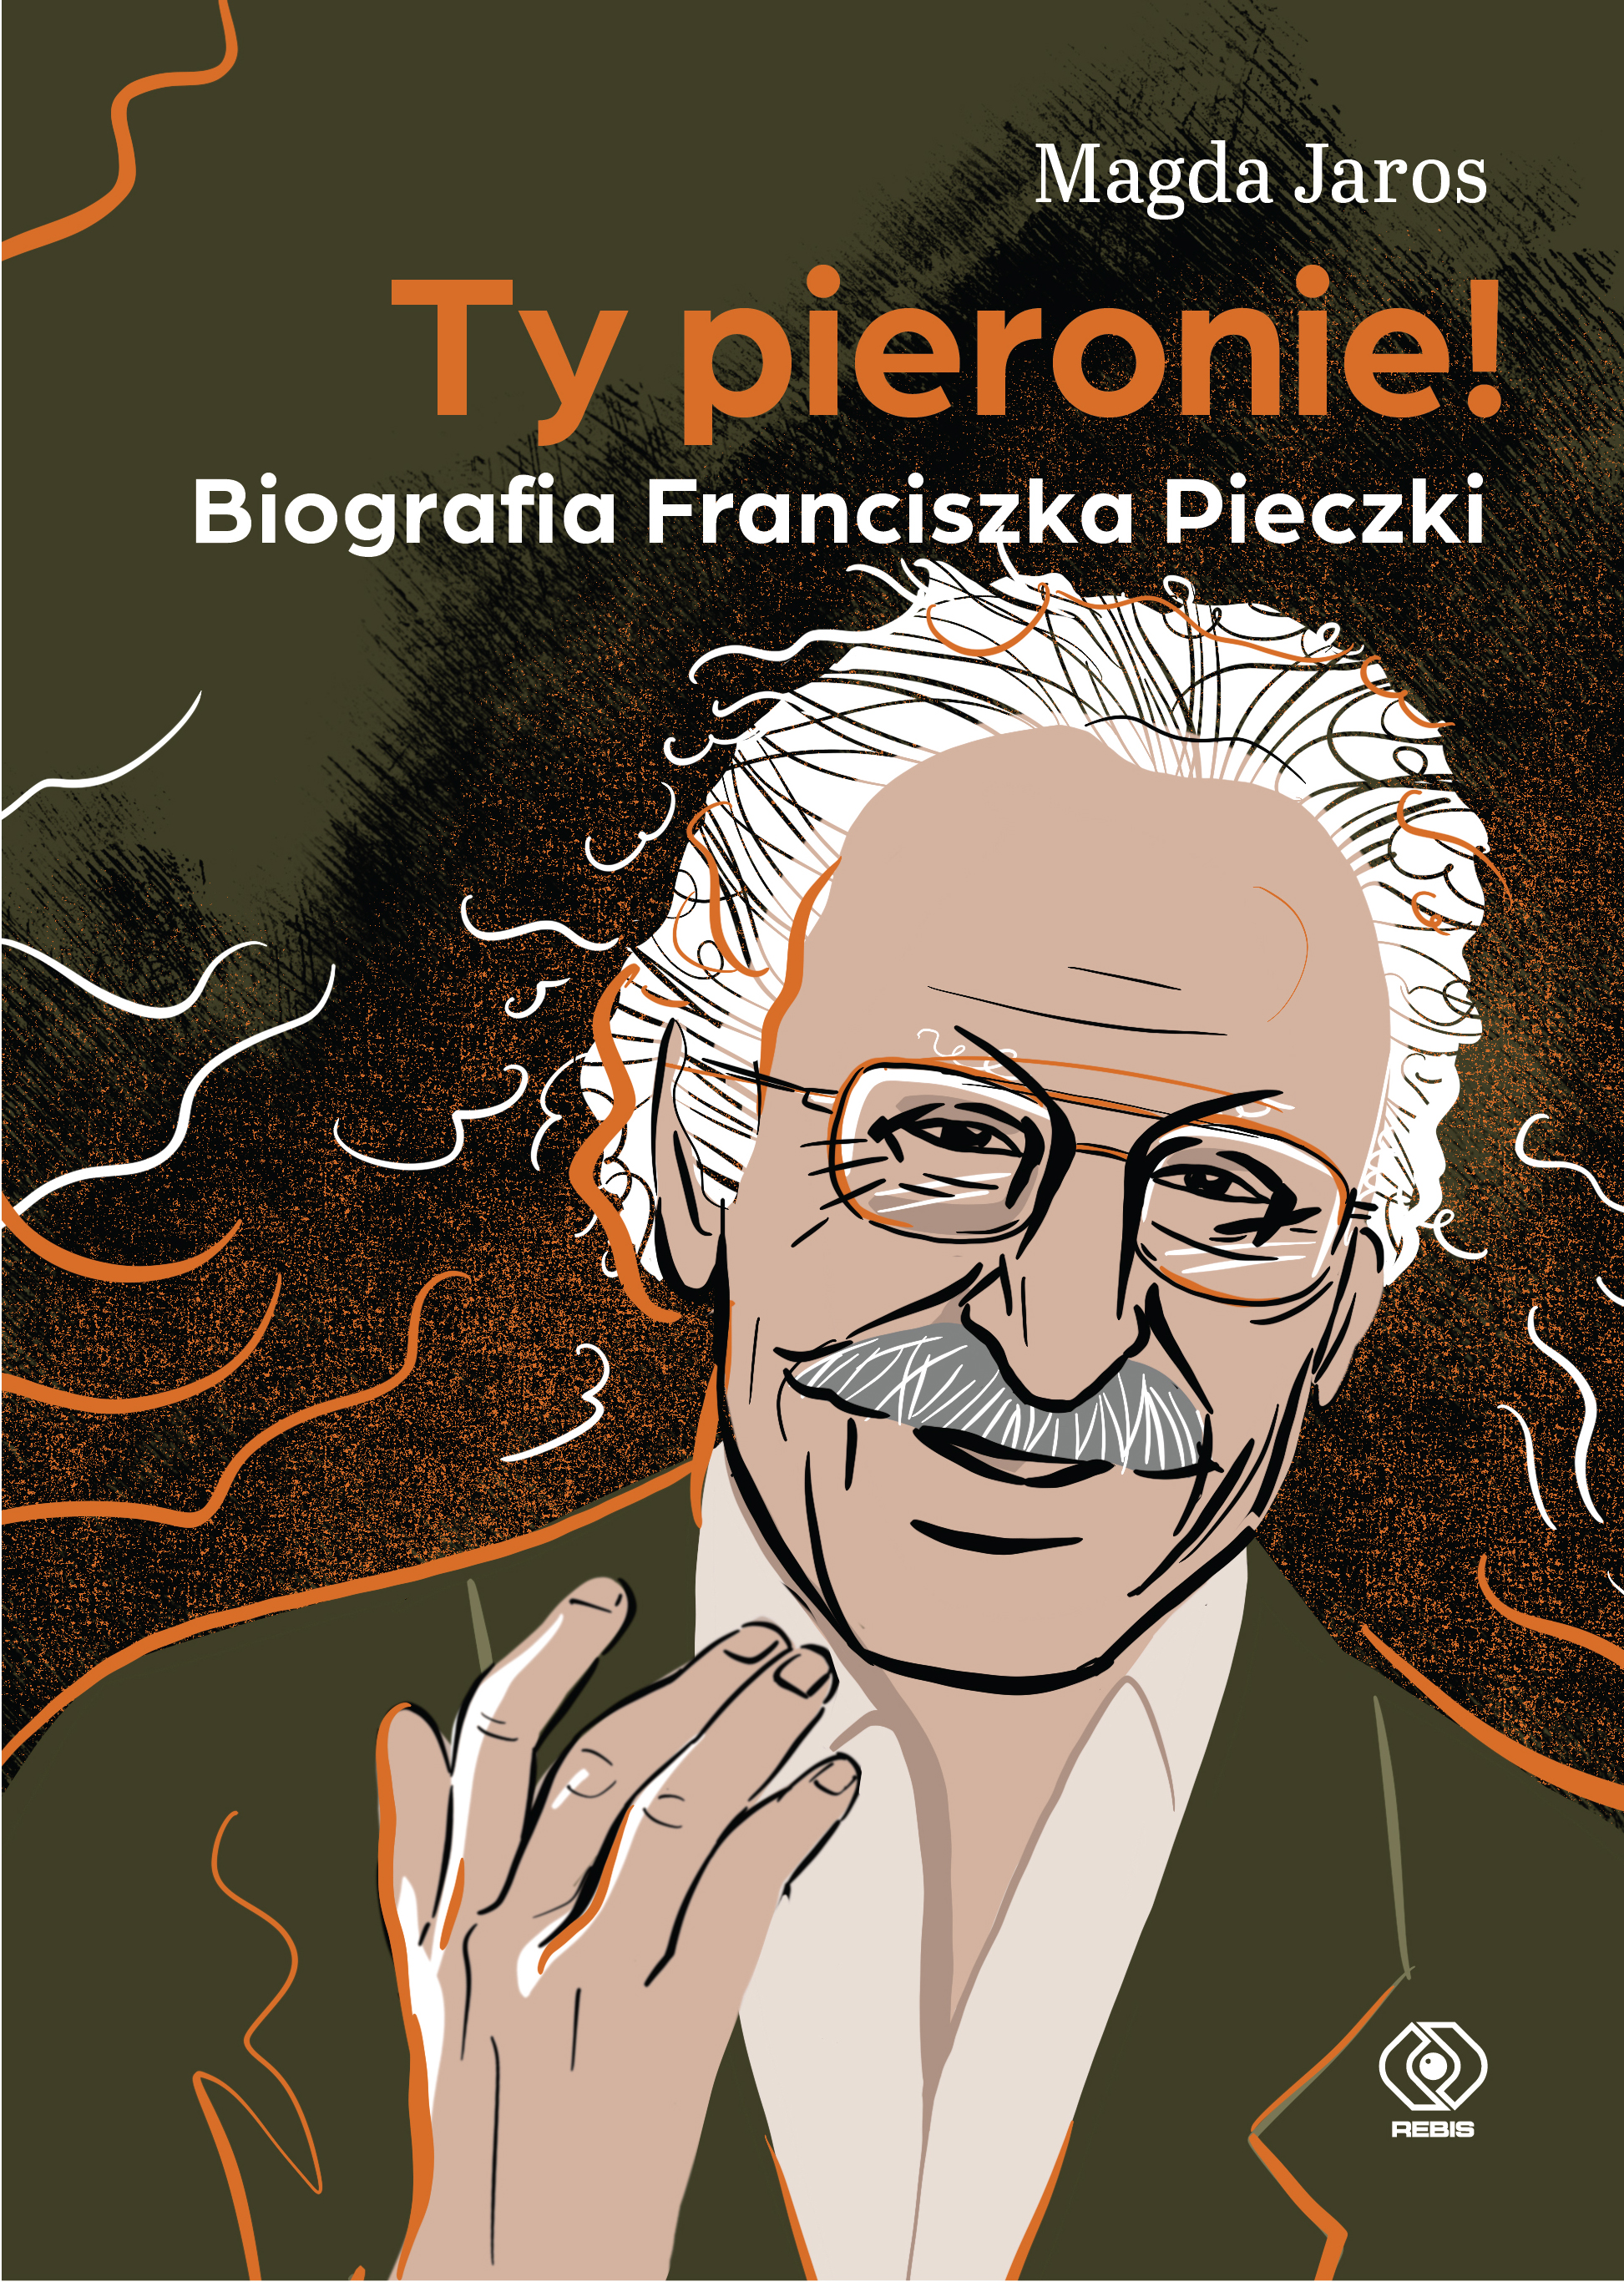 "Ty pieronie"  - 95 rocznica urodzin Franciszka Pieczki!